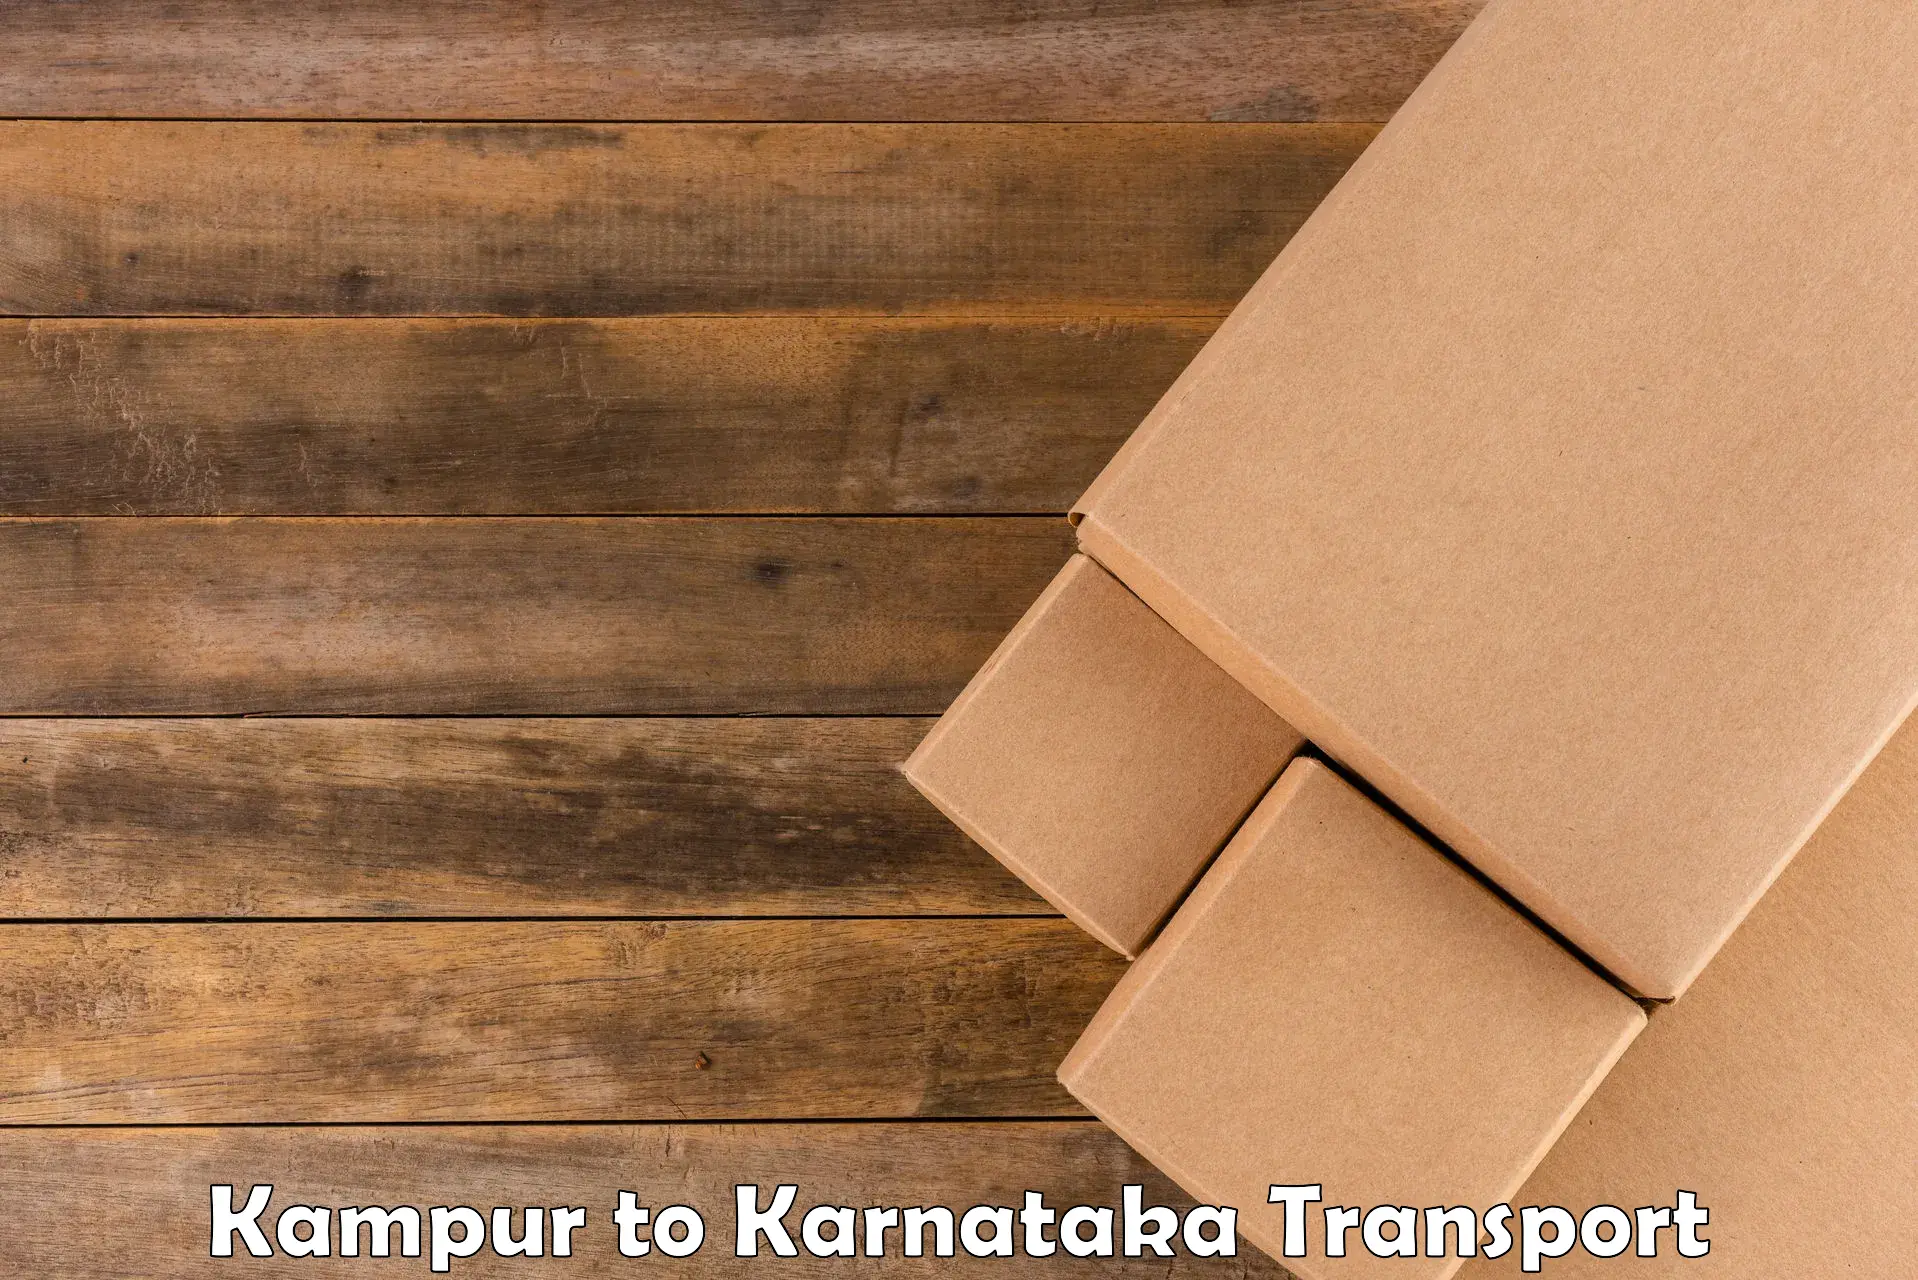 Cycle transportation service Kampur to Khanapur Karnataka